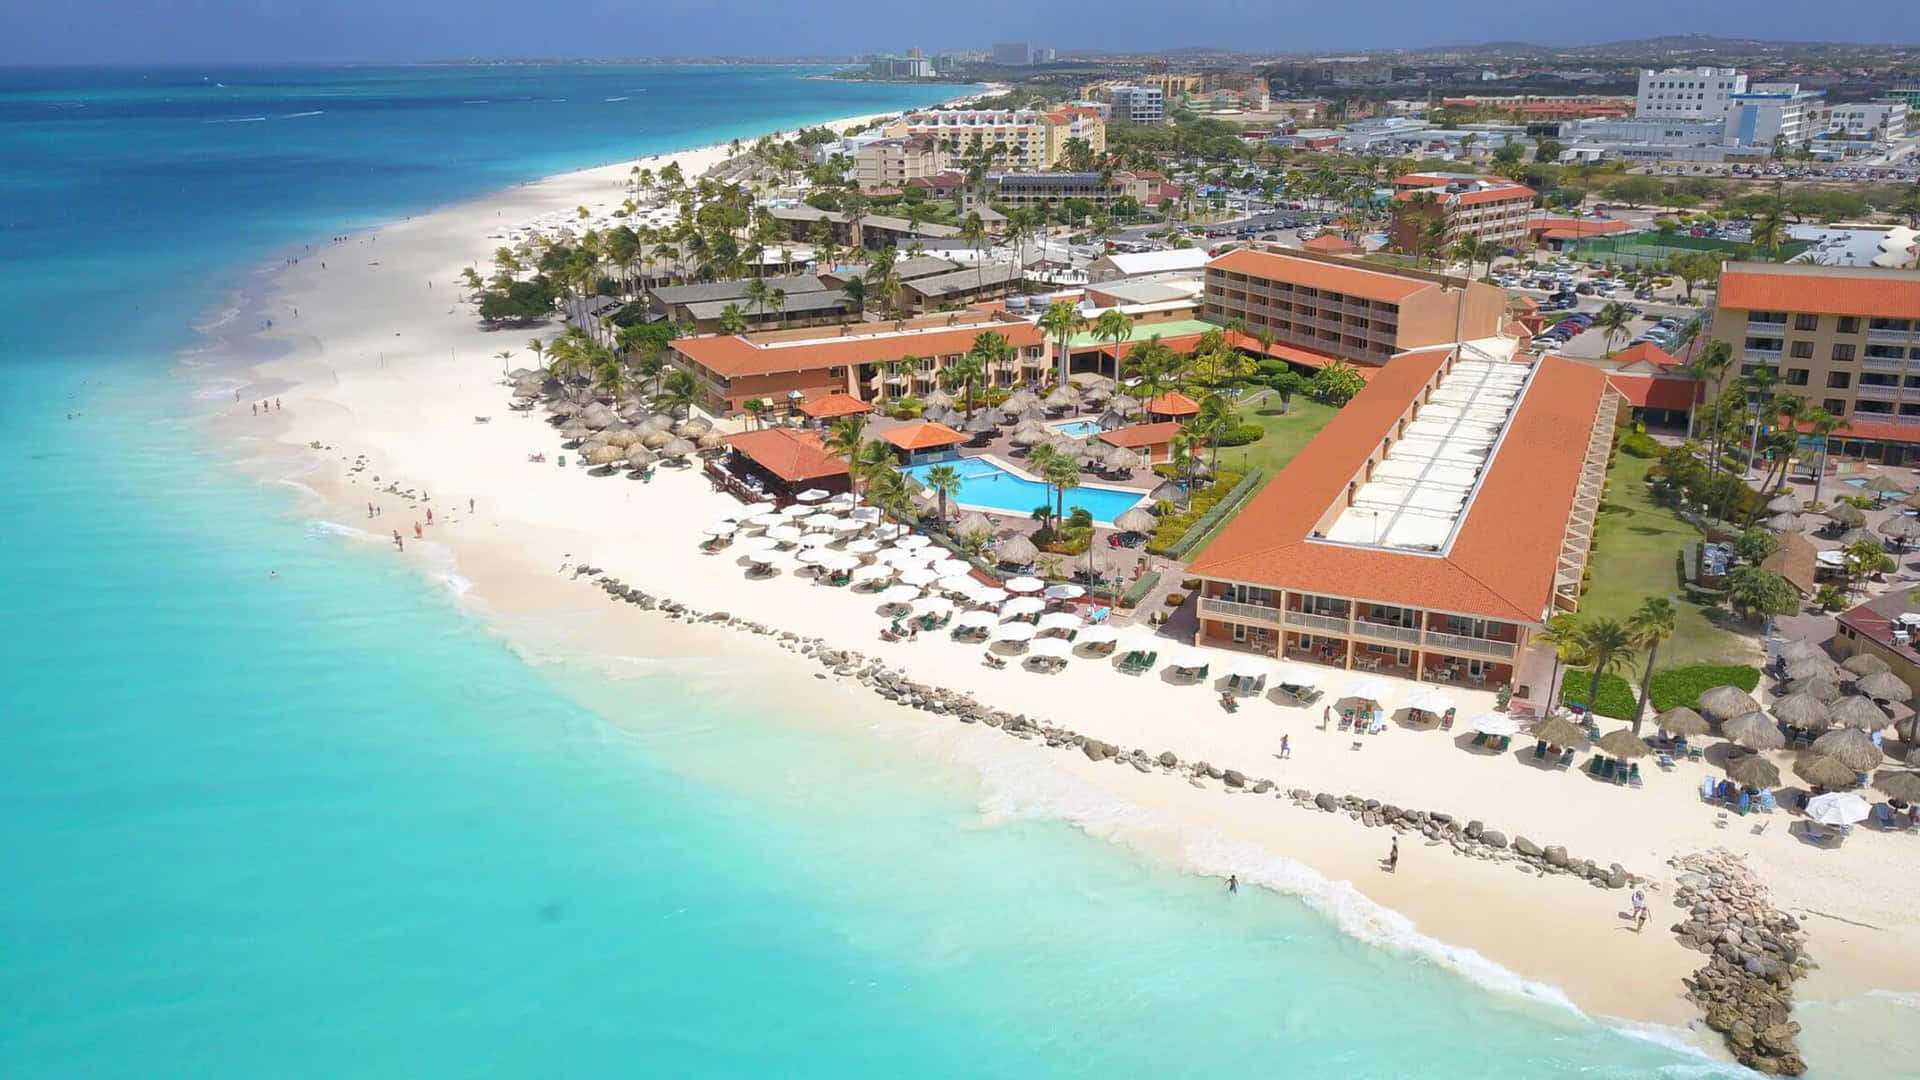 Imágenesde Los Resorts De Playa En Aruba.